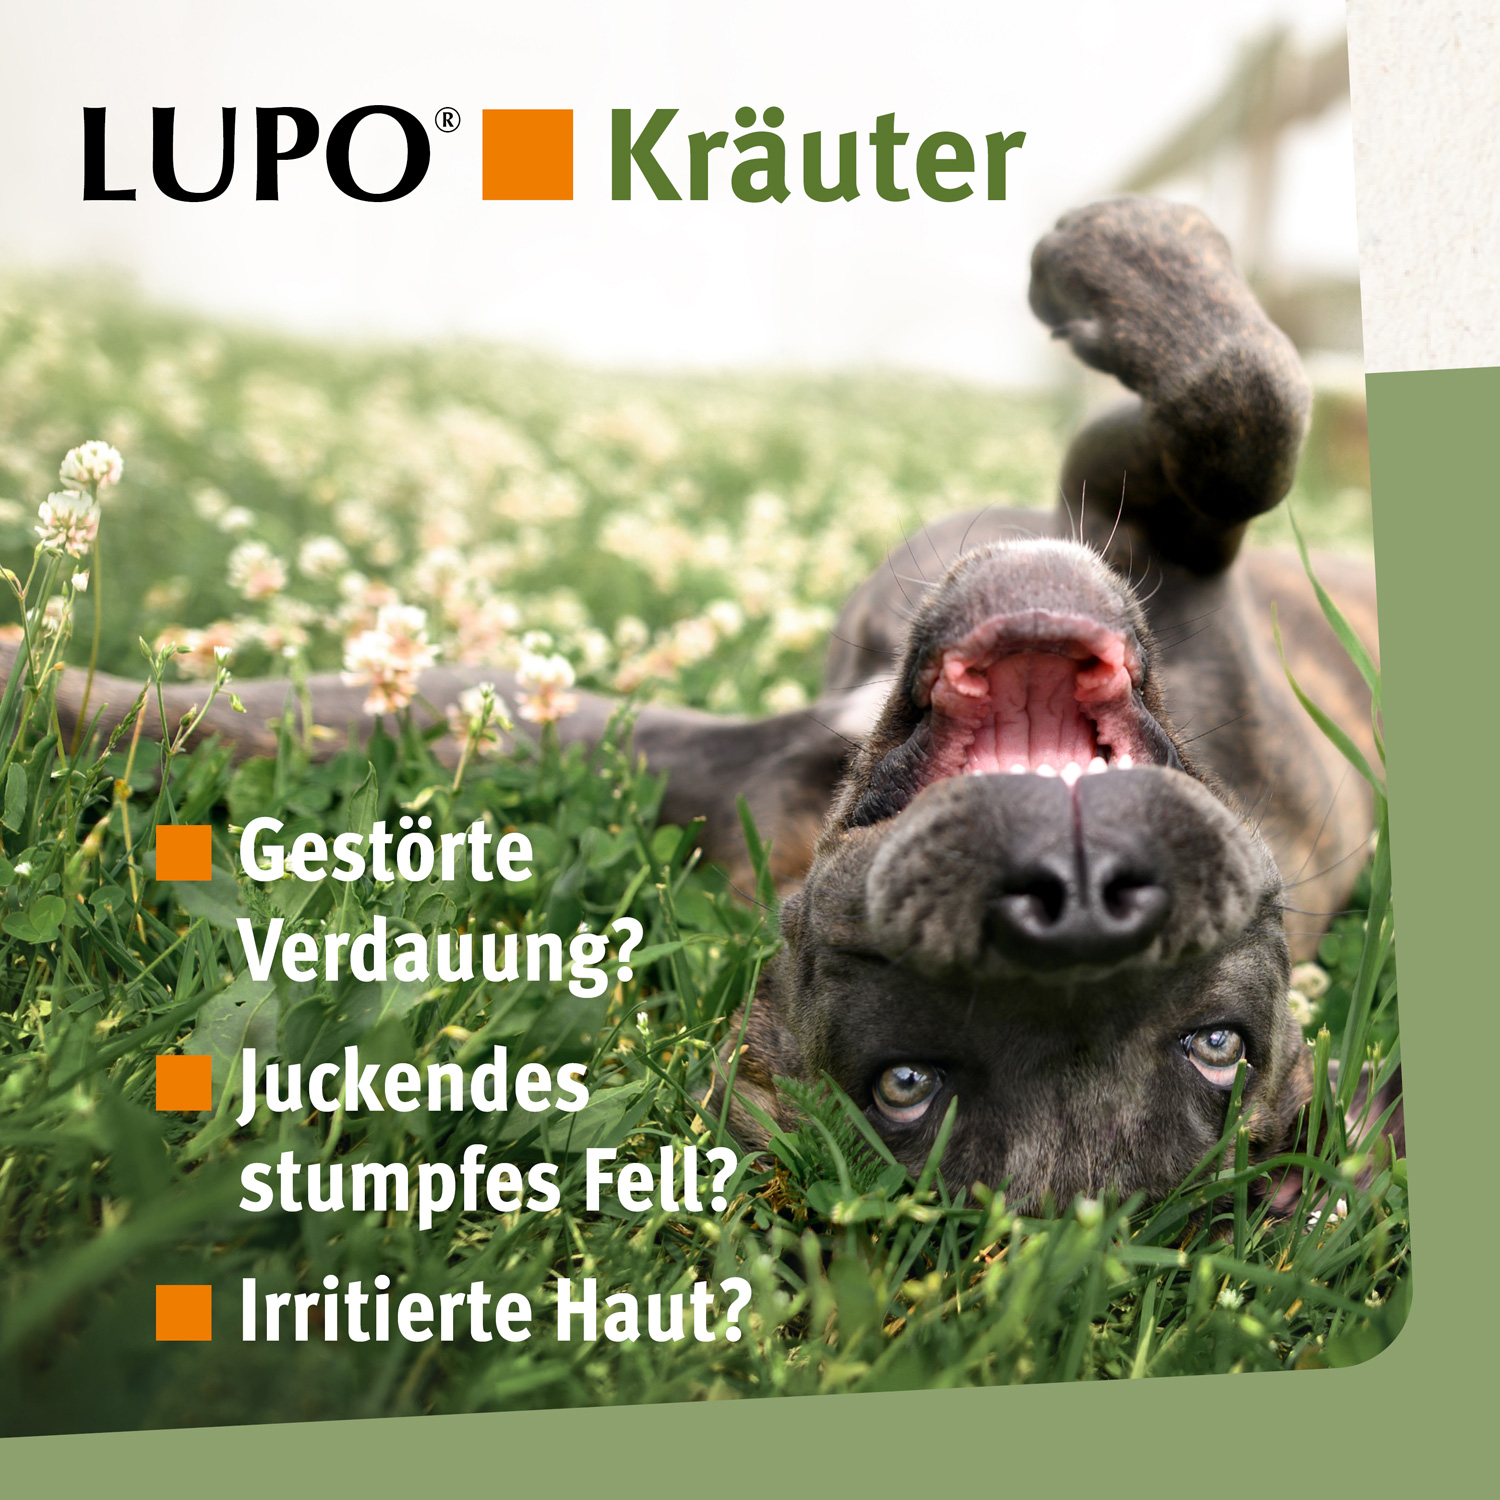 LUPO Kräuter Pellets 1100 g